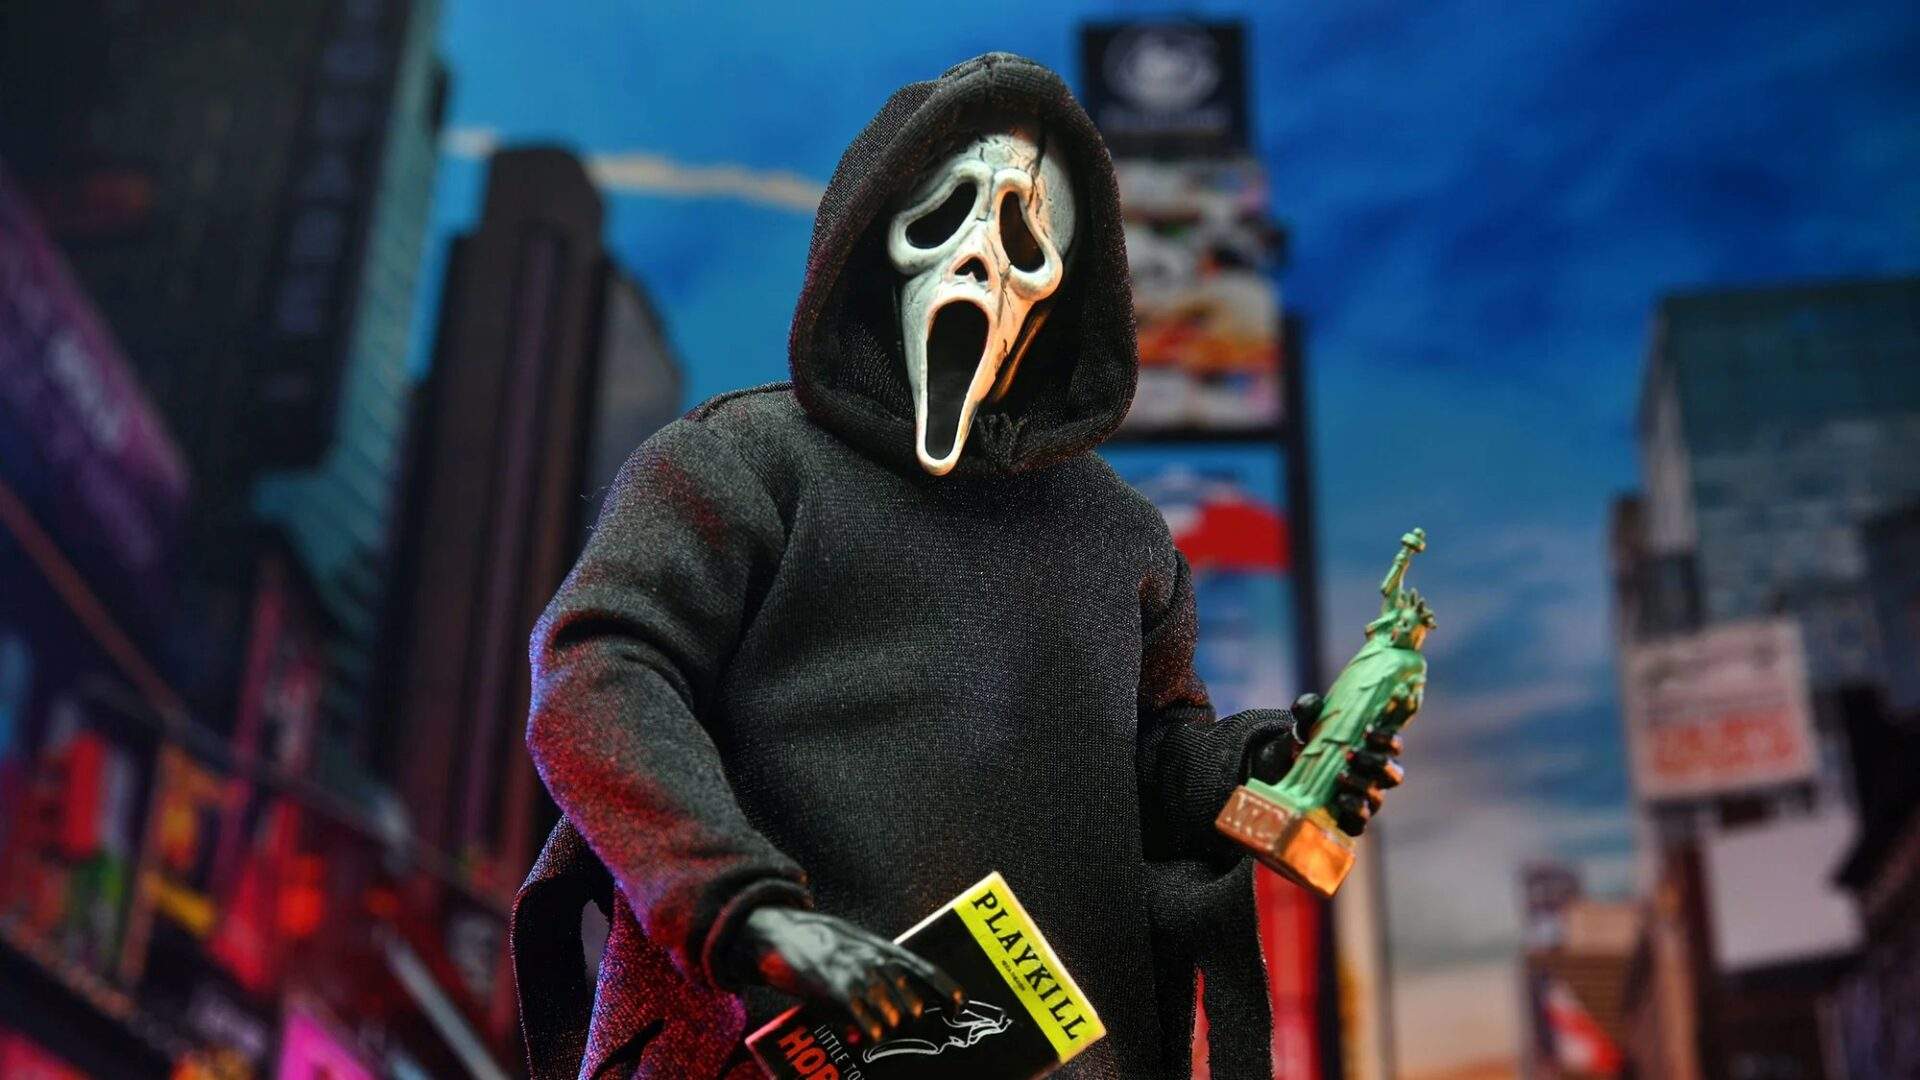 Scream VI:” Ghostface takes Manhattan